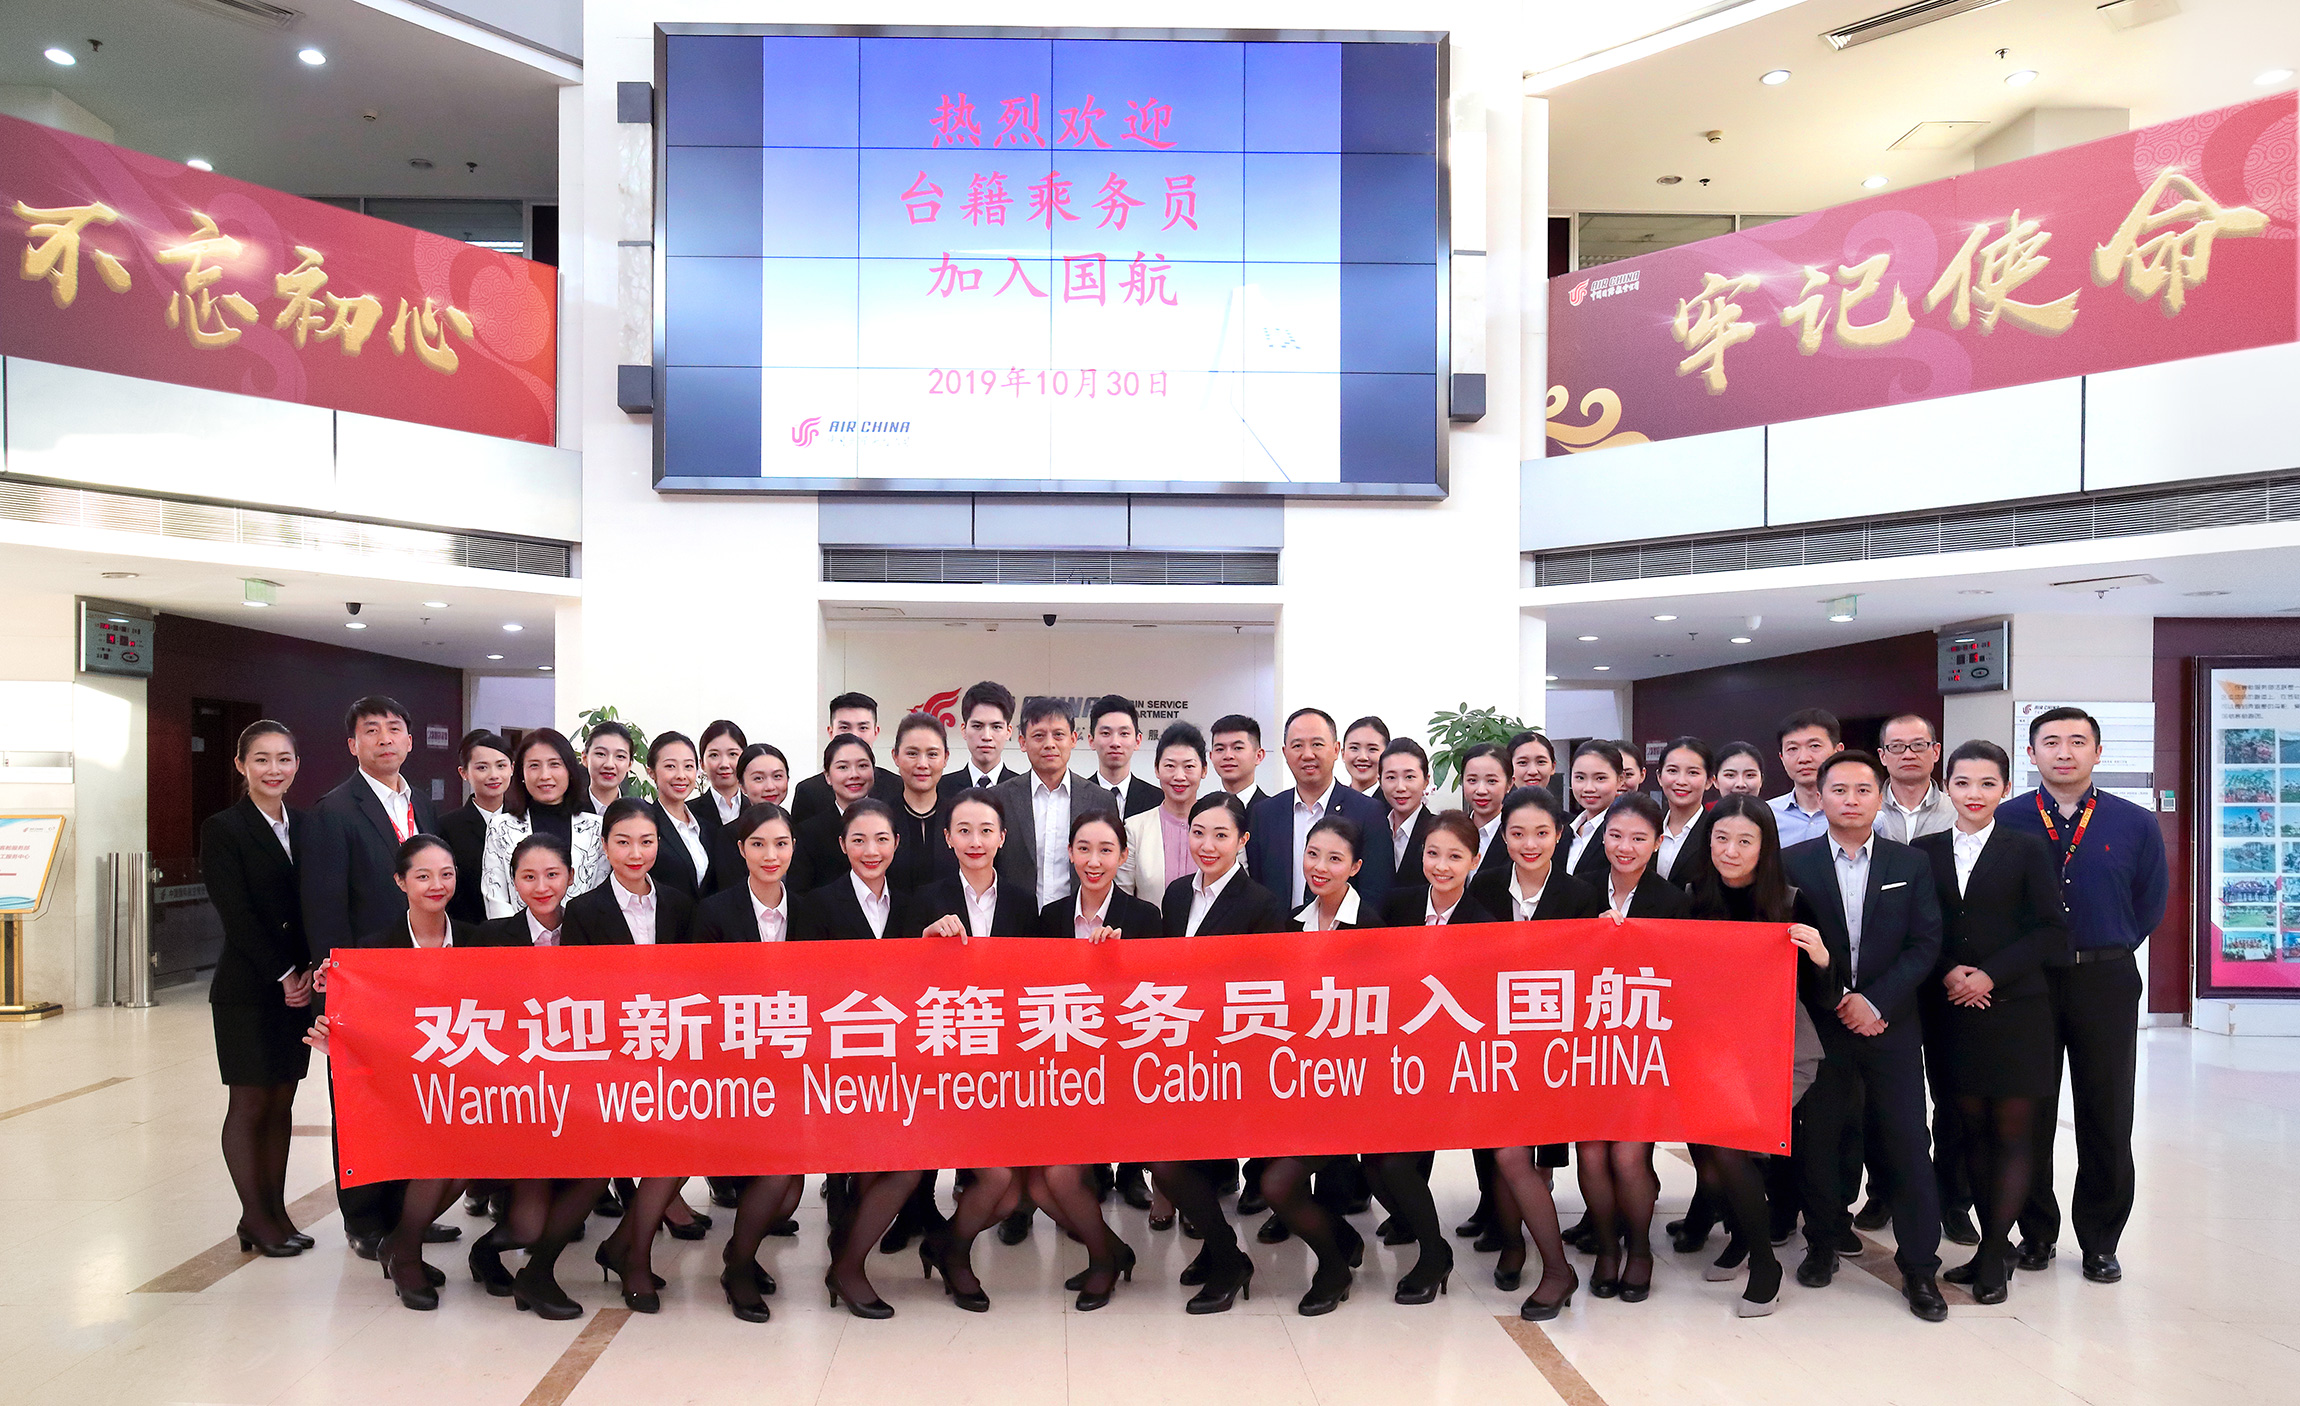 中国国航招聘_2017中国国际航空招聘40名应届毕业生公告